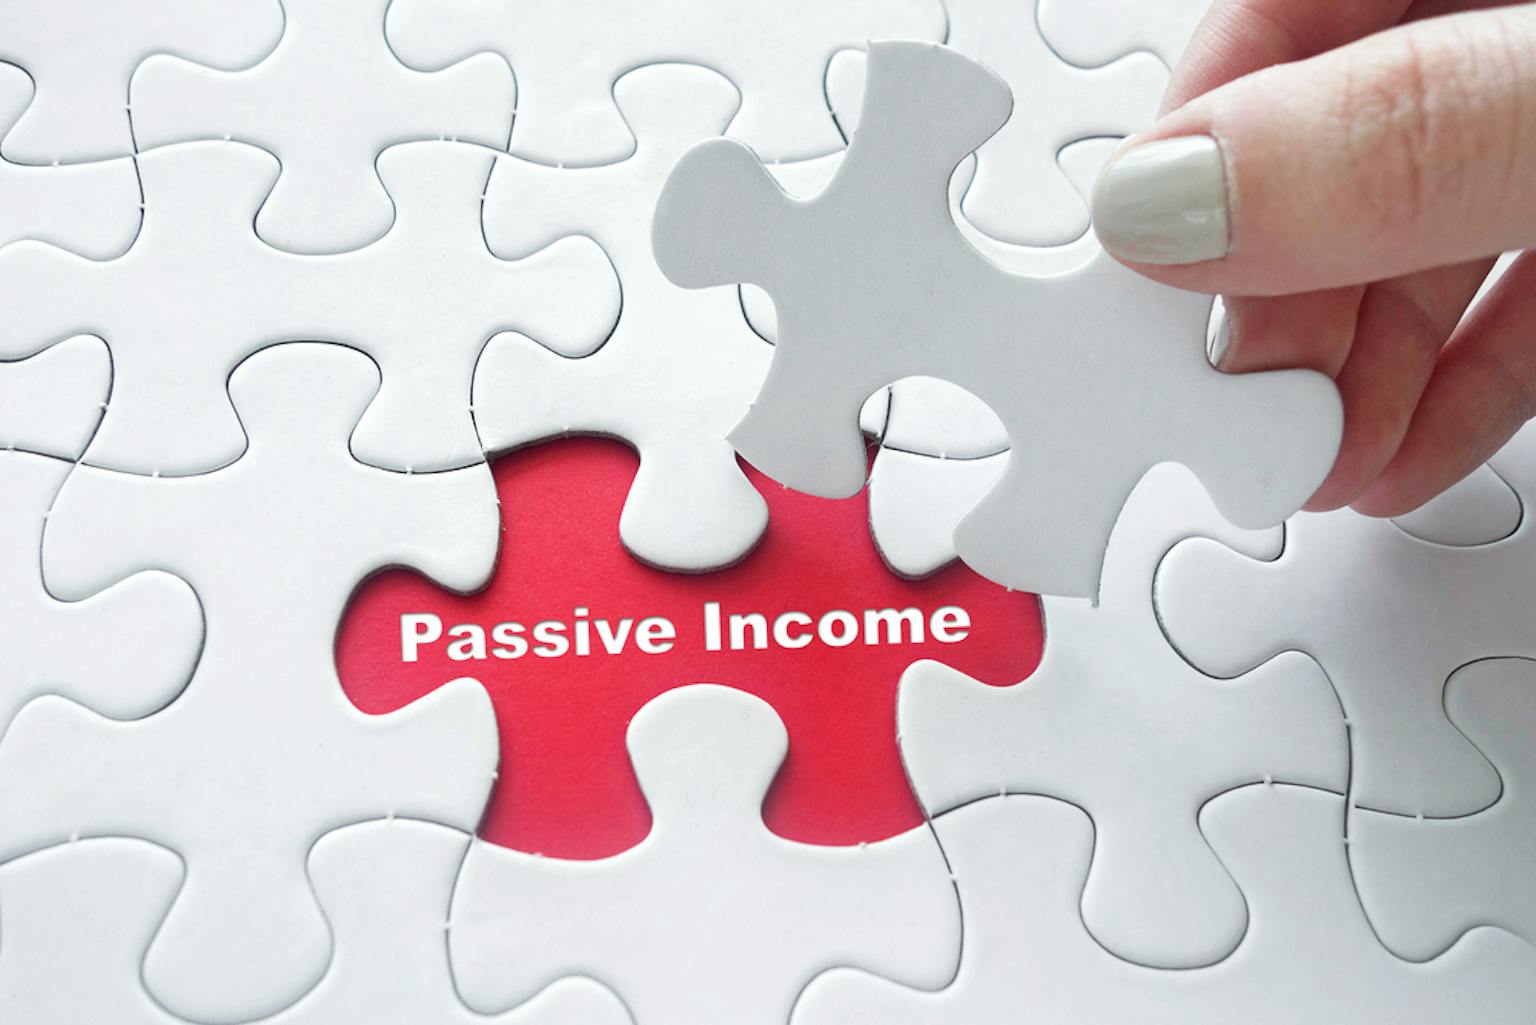 สร้าง Passive Income จากการลงทุน